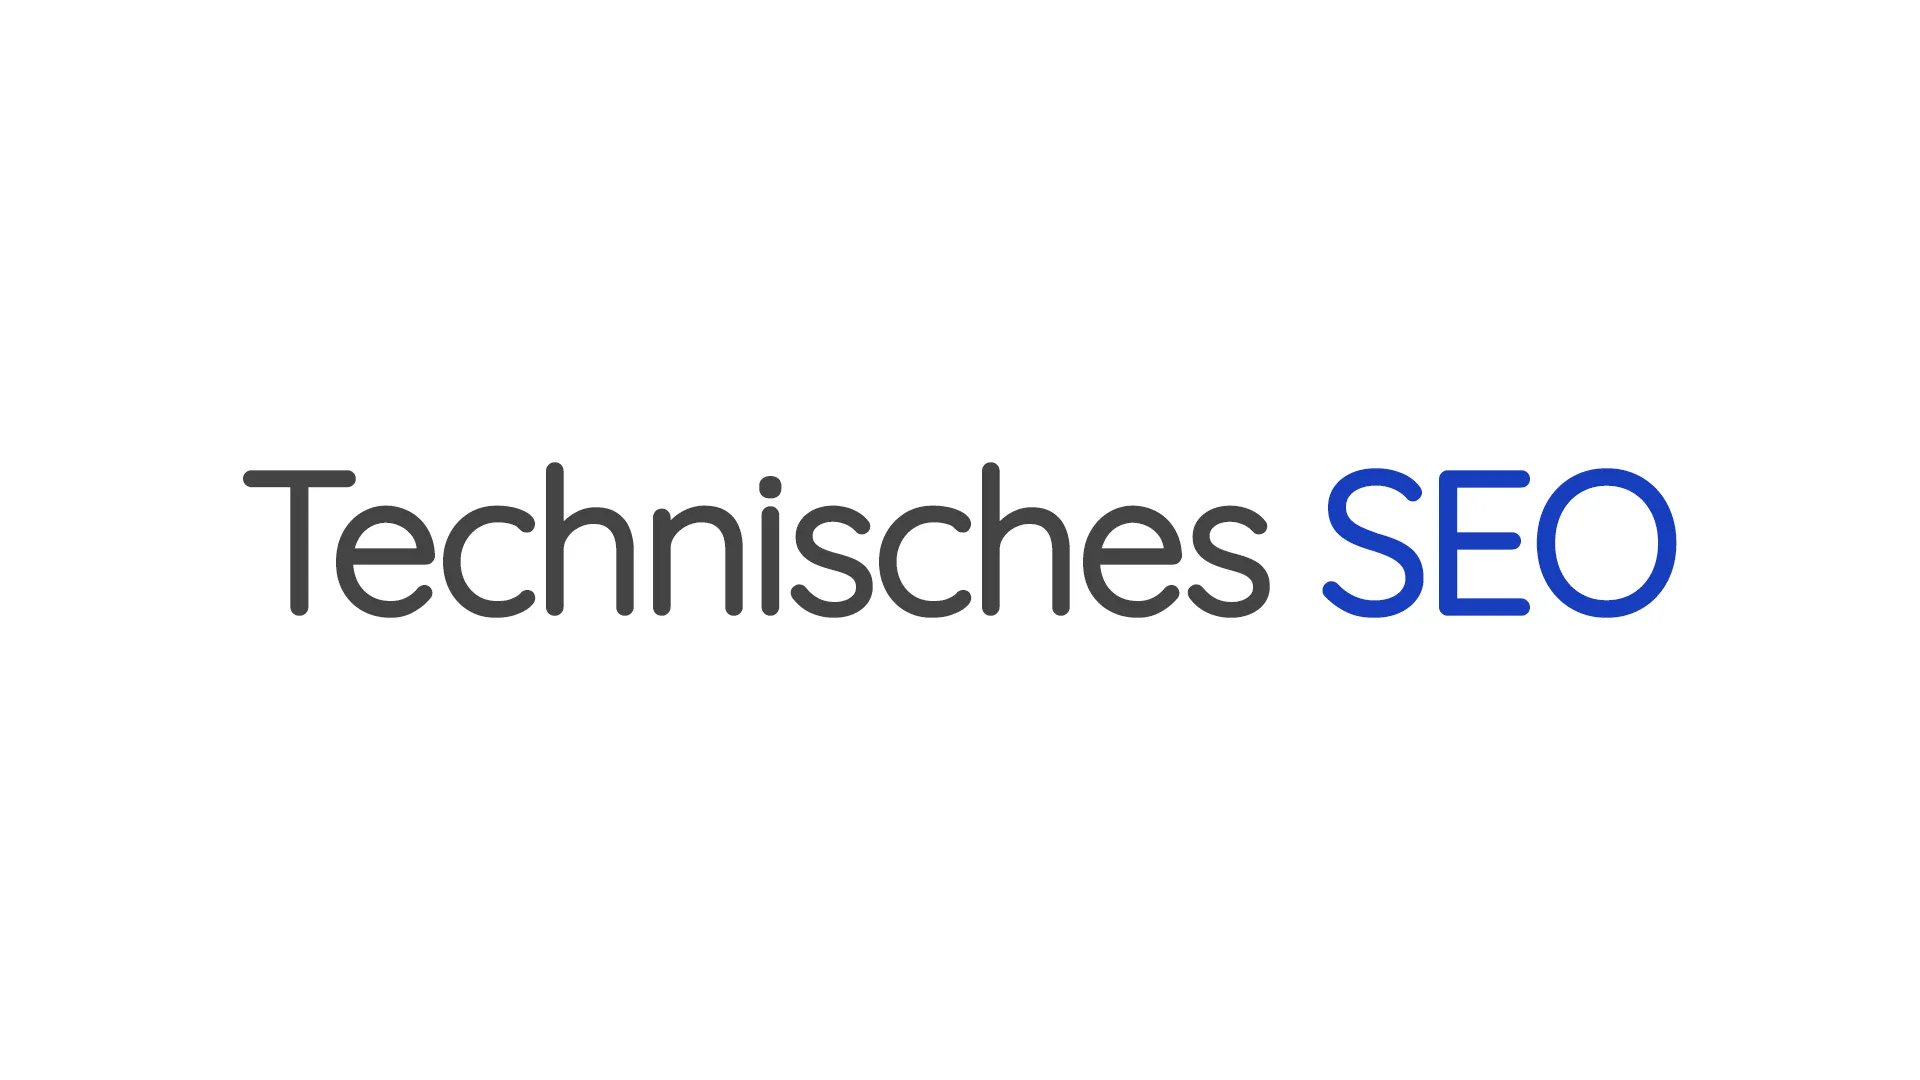 Das Wort "Technisches SEO" in Grau und "SEO" in Blau. Der Stil ist einfach und modern